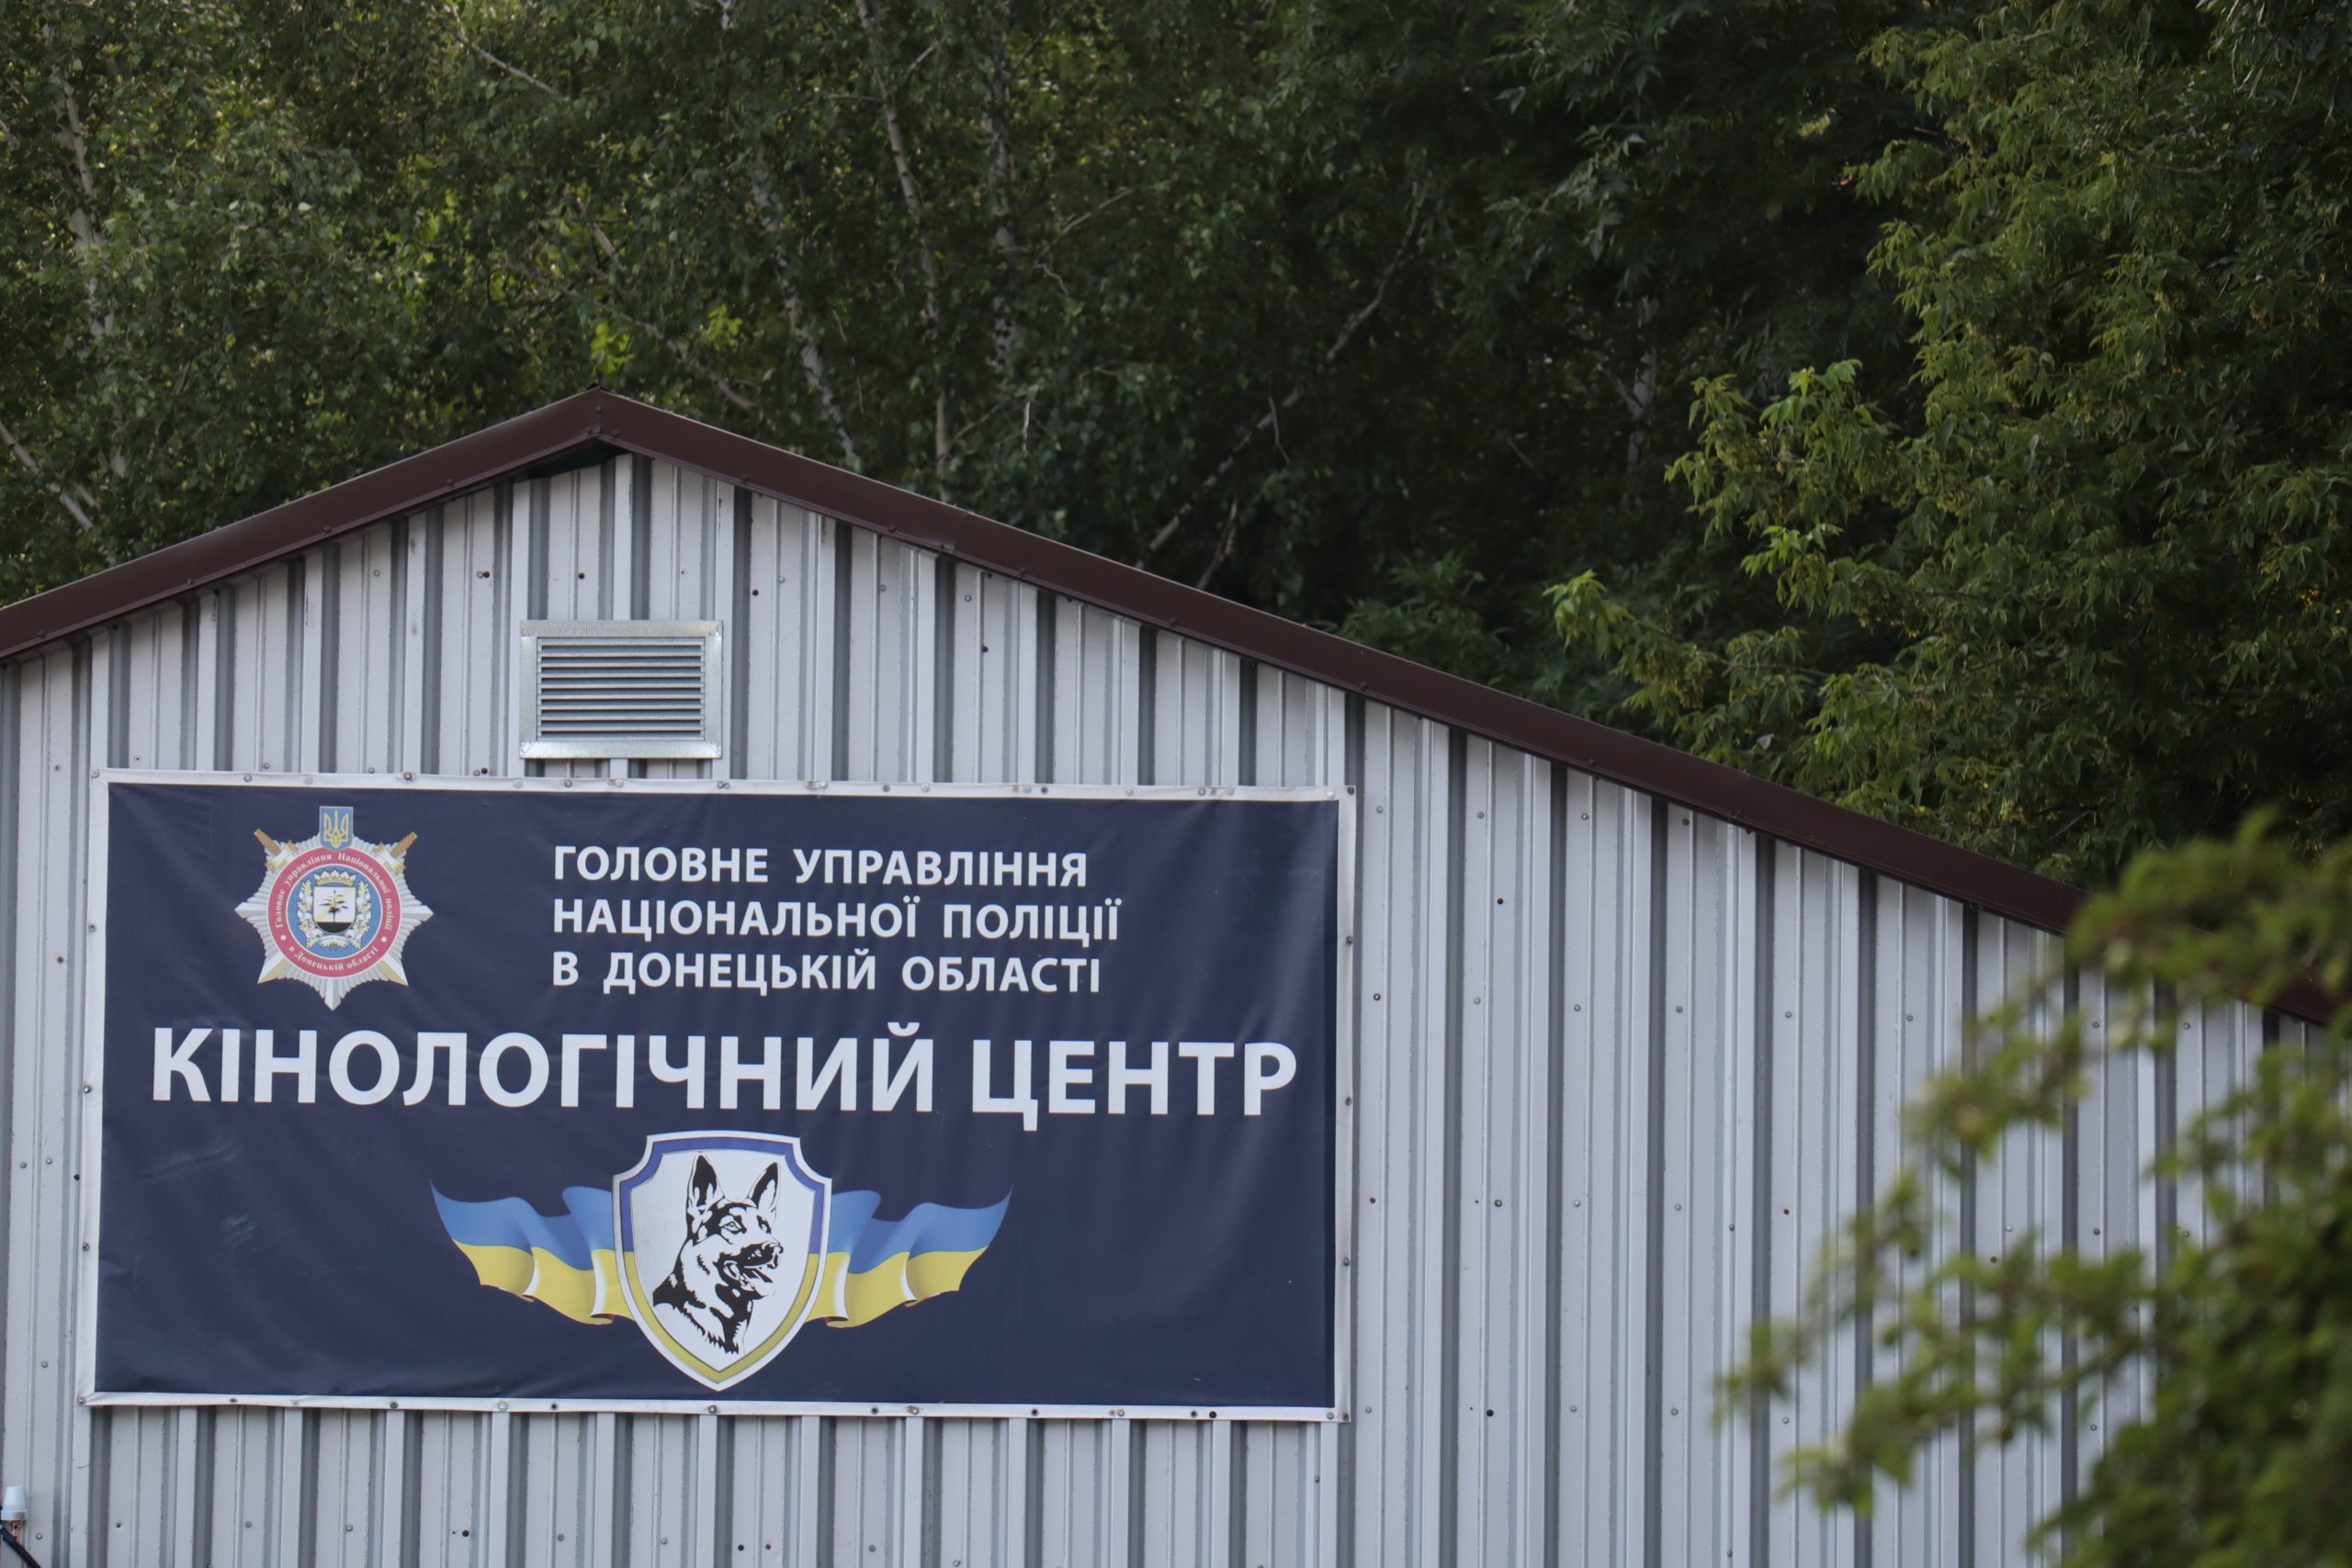 Кінологічний центр Головного управління Національної поліції в Донецькій області